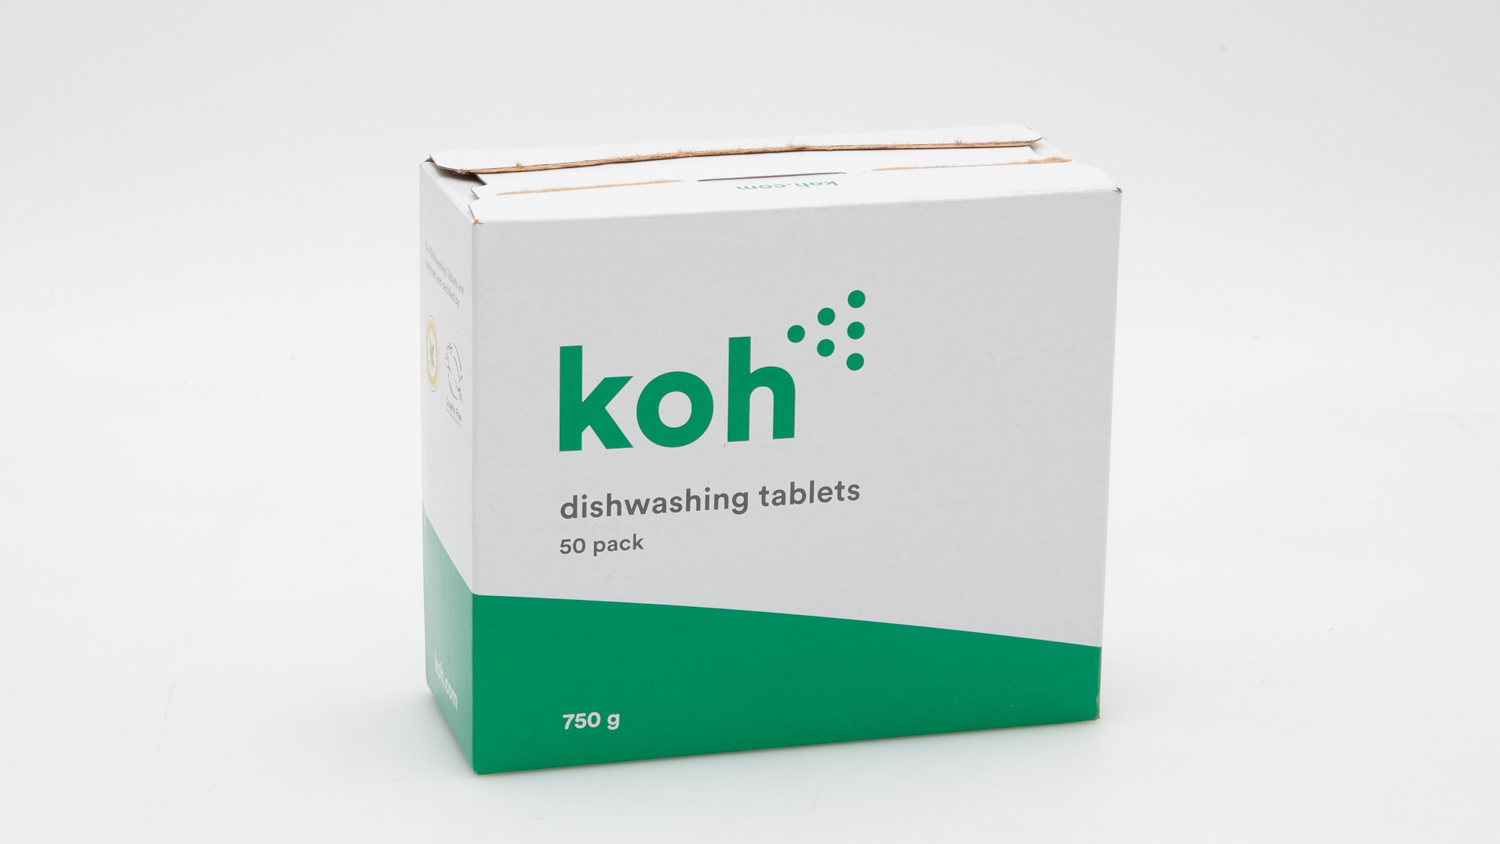 Koh Dishwashing Tablets carousel image